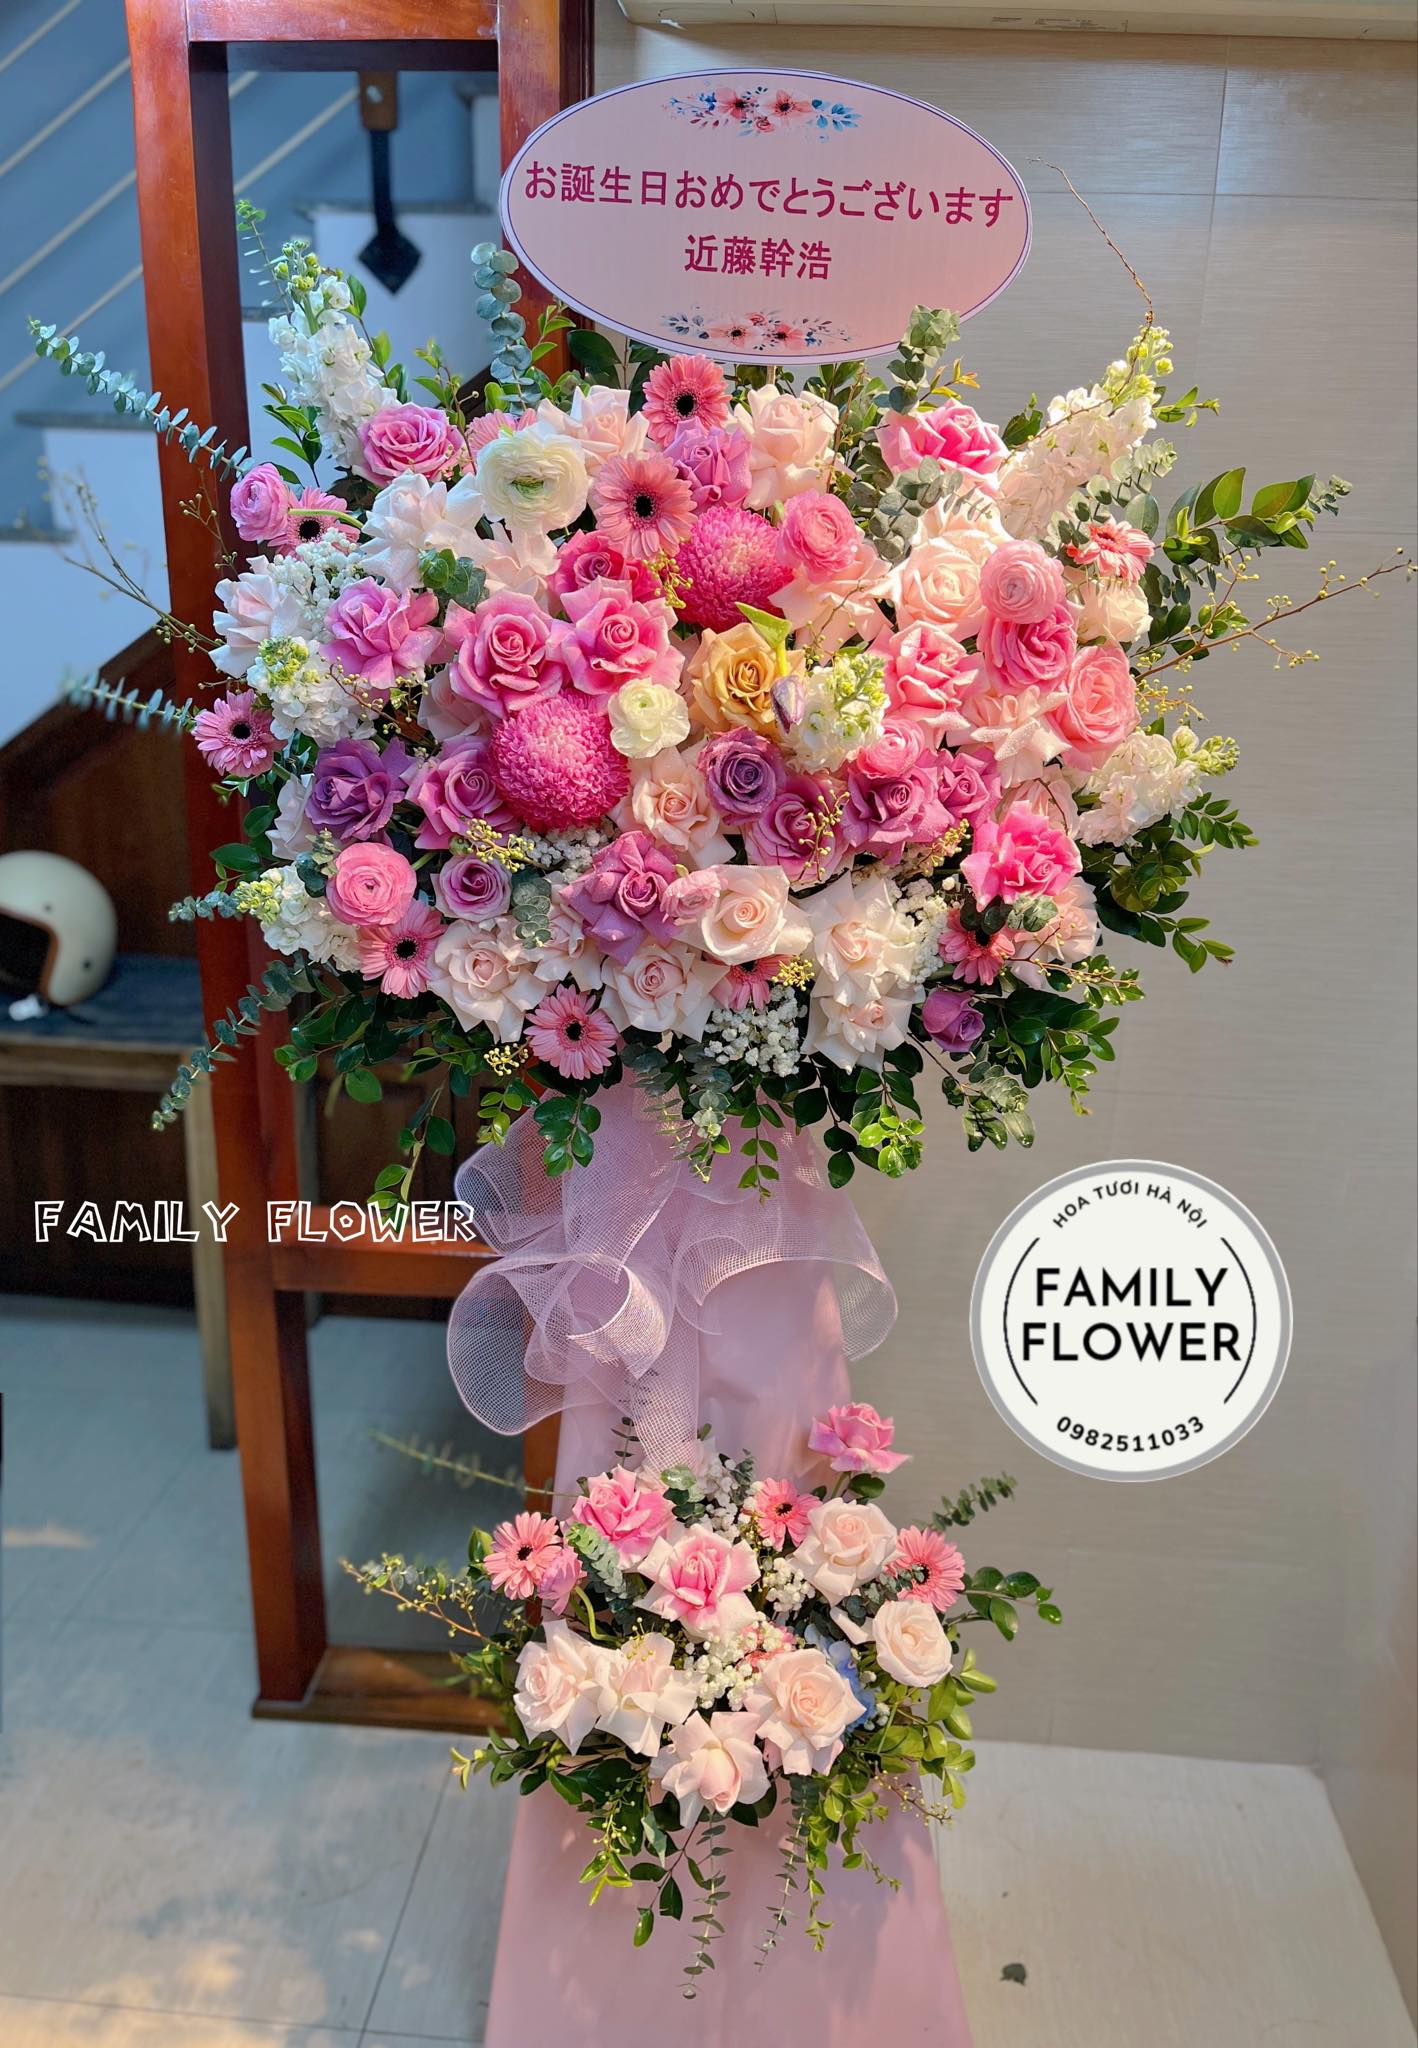 Kệ hoa tone hồng chúc mừng sinh nhật công ty tại quận Ba Đình Hà Nội !Hoa tươi Ba Đình ! Mua hoa online tại Hà Nội